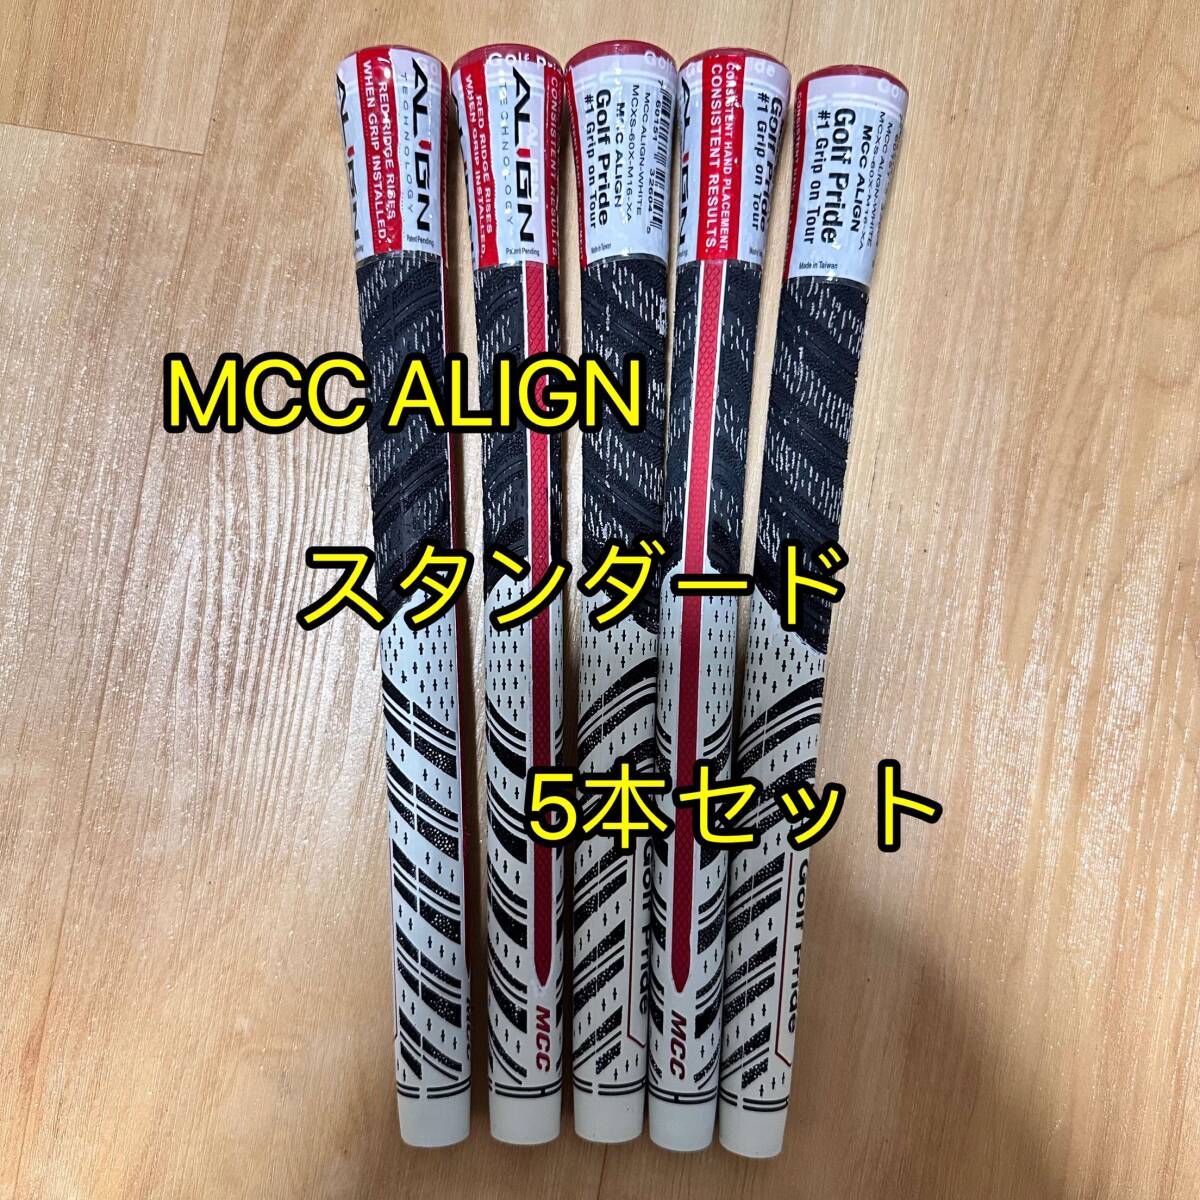 【ラスト1セット】ゴルフプライド グリップ MCC ALIGN スタンダードサイズ グリップ 5本セット アラインの画像1